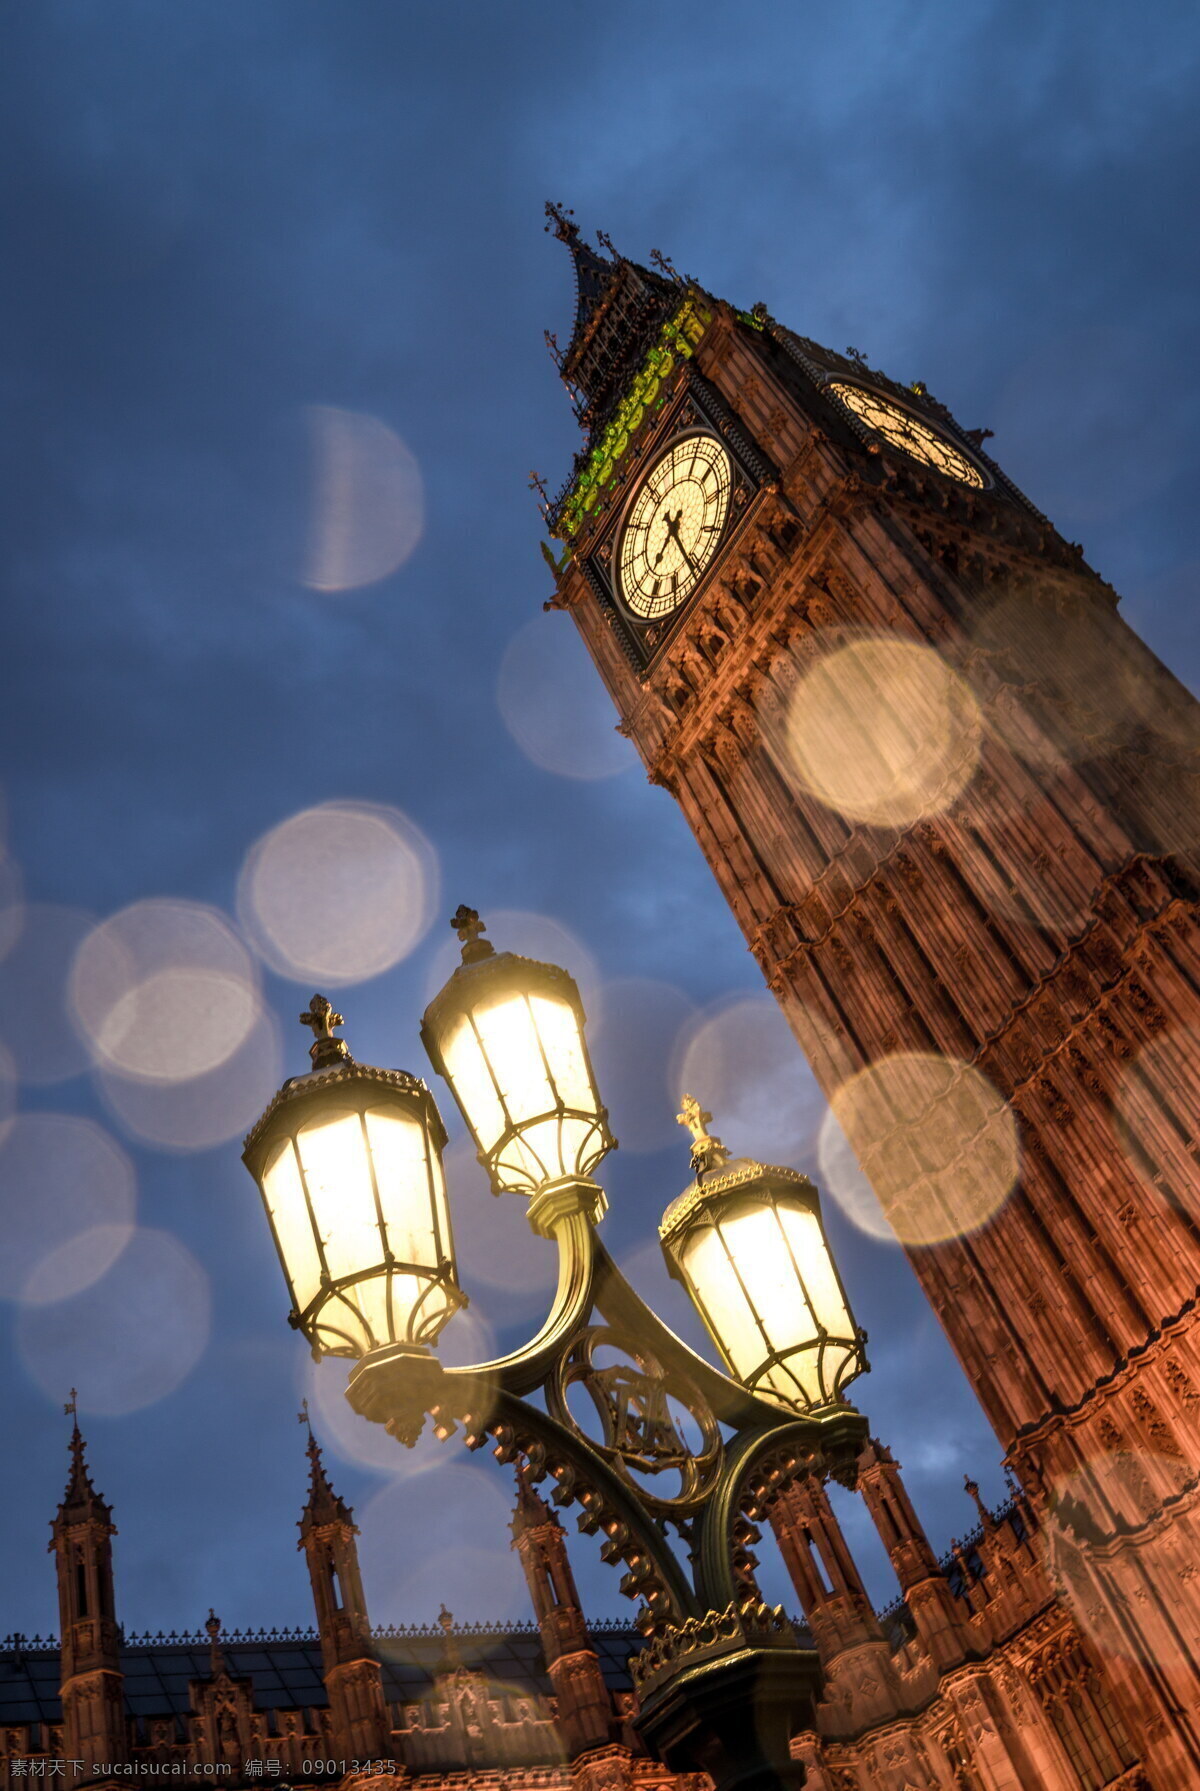 大本钟与街灯 大本钟 大笨钟 英国 伦敦 钟塔 时钟塔 街灯 路灯 建筑 建筑物 特色建 建筑摄影 建筑园林